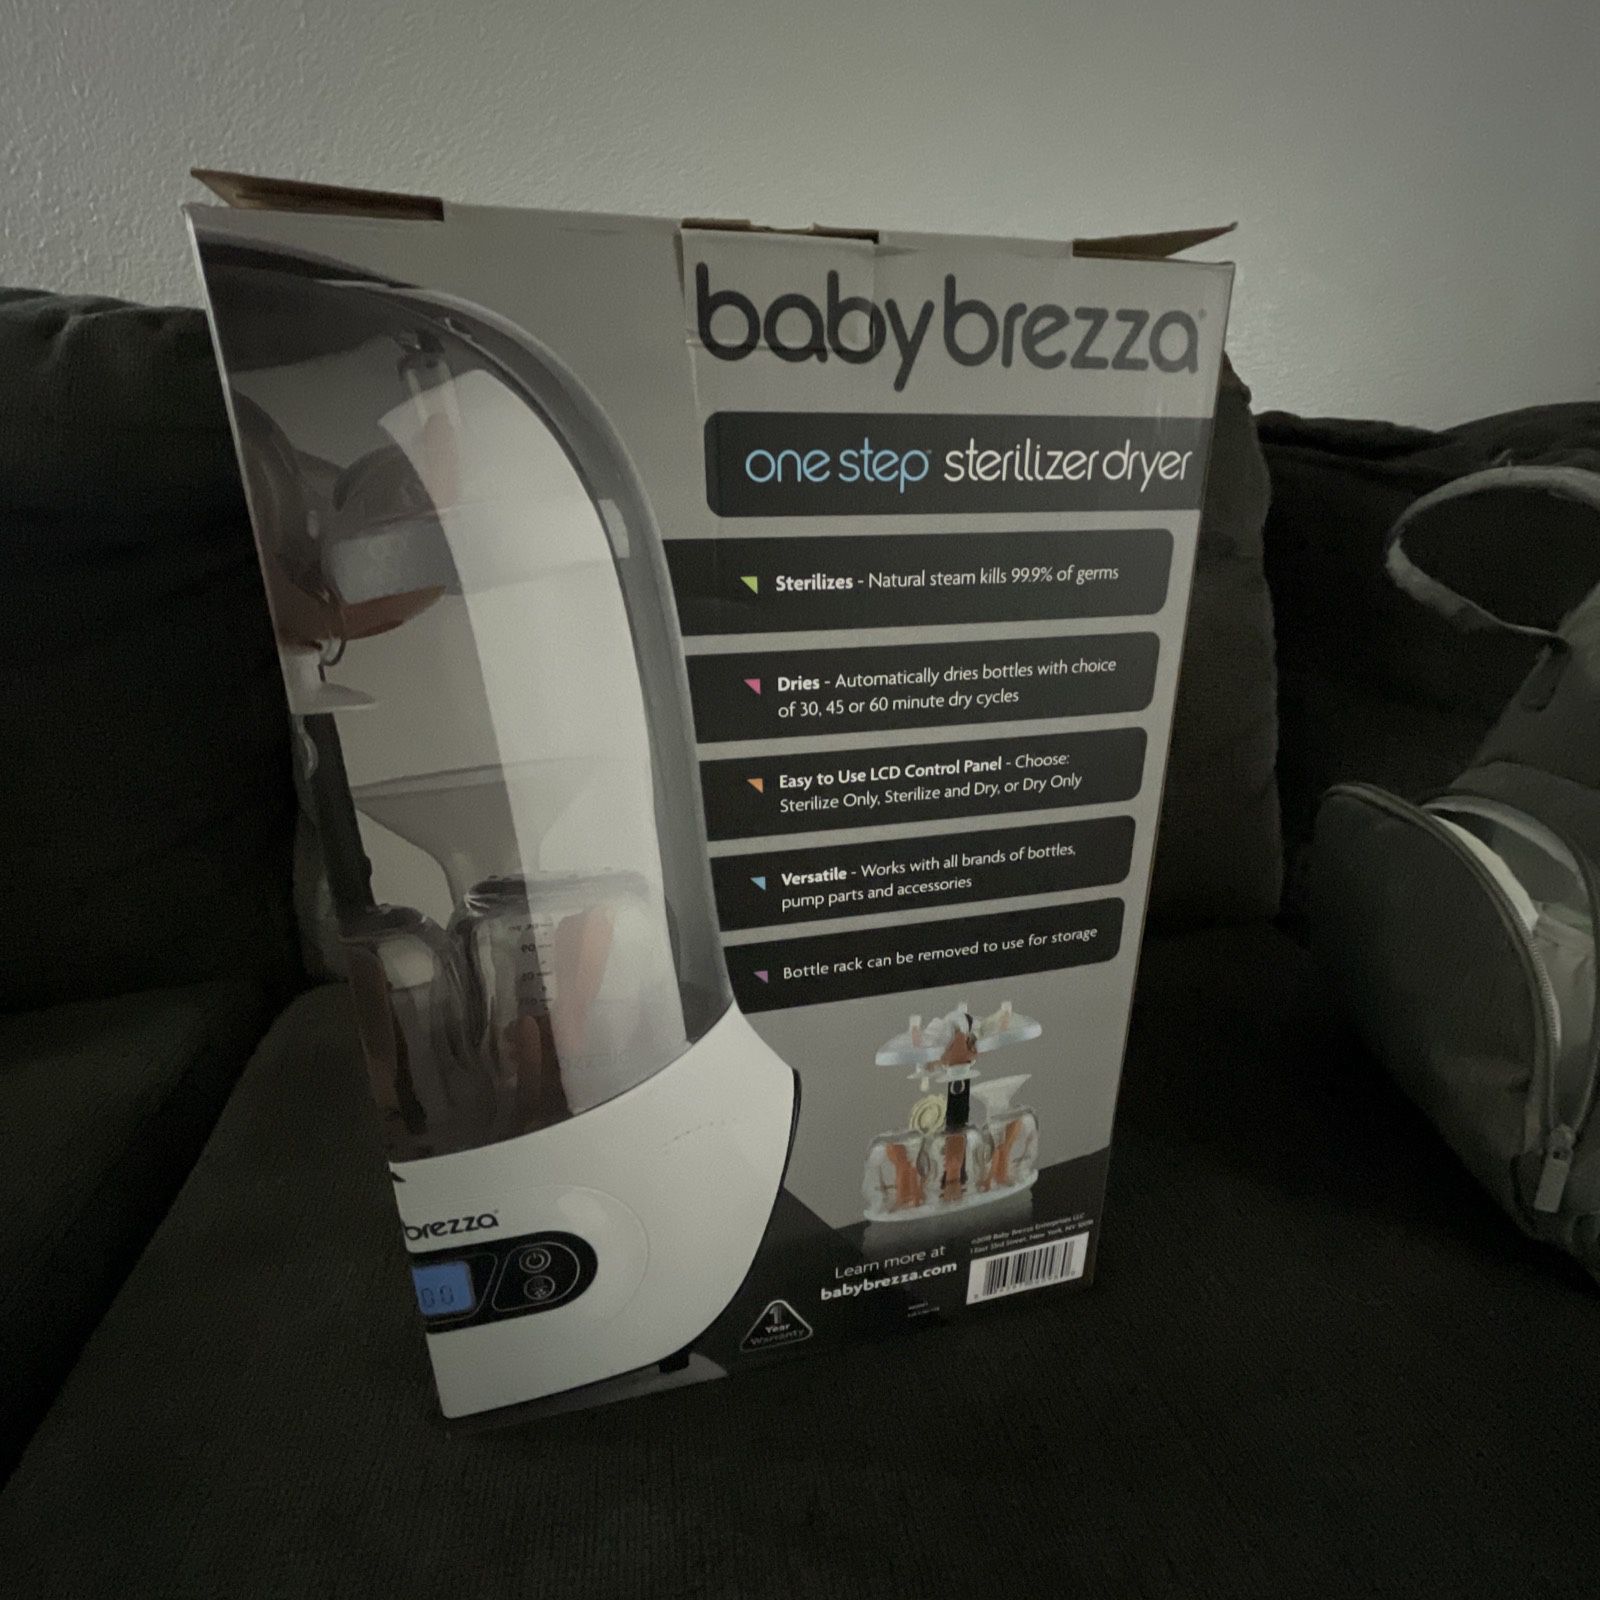 Baby Brezza One Step Sterilizer Dryer 